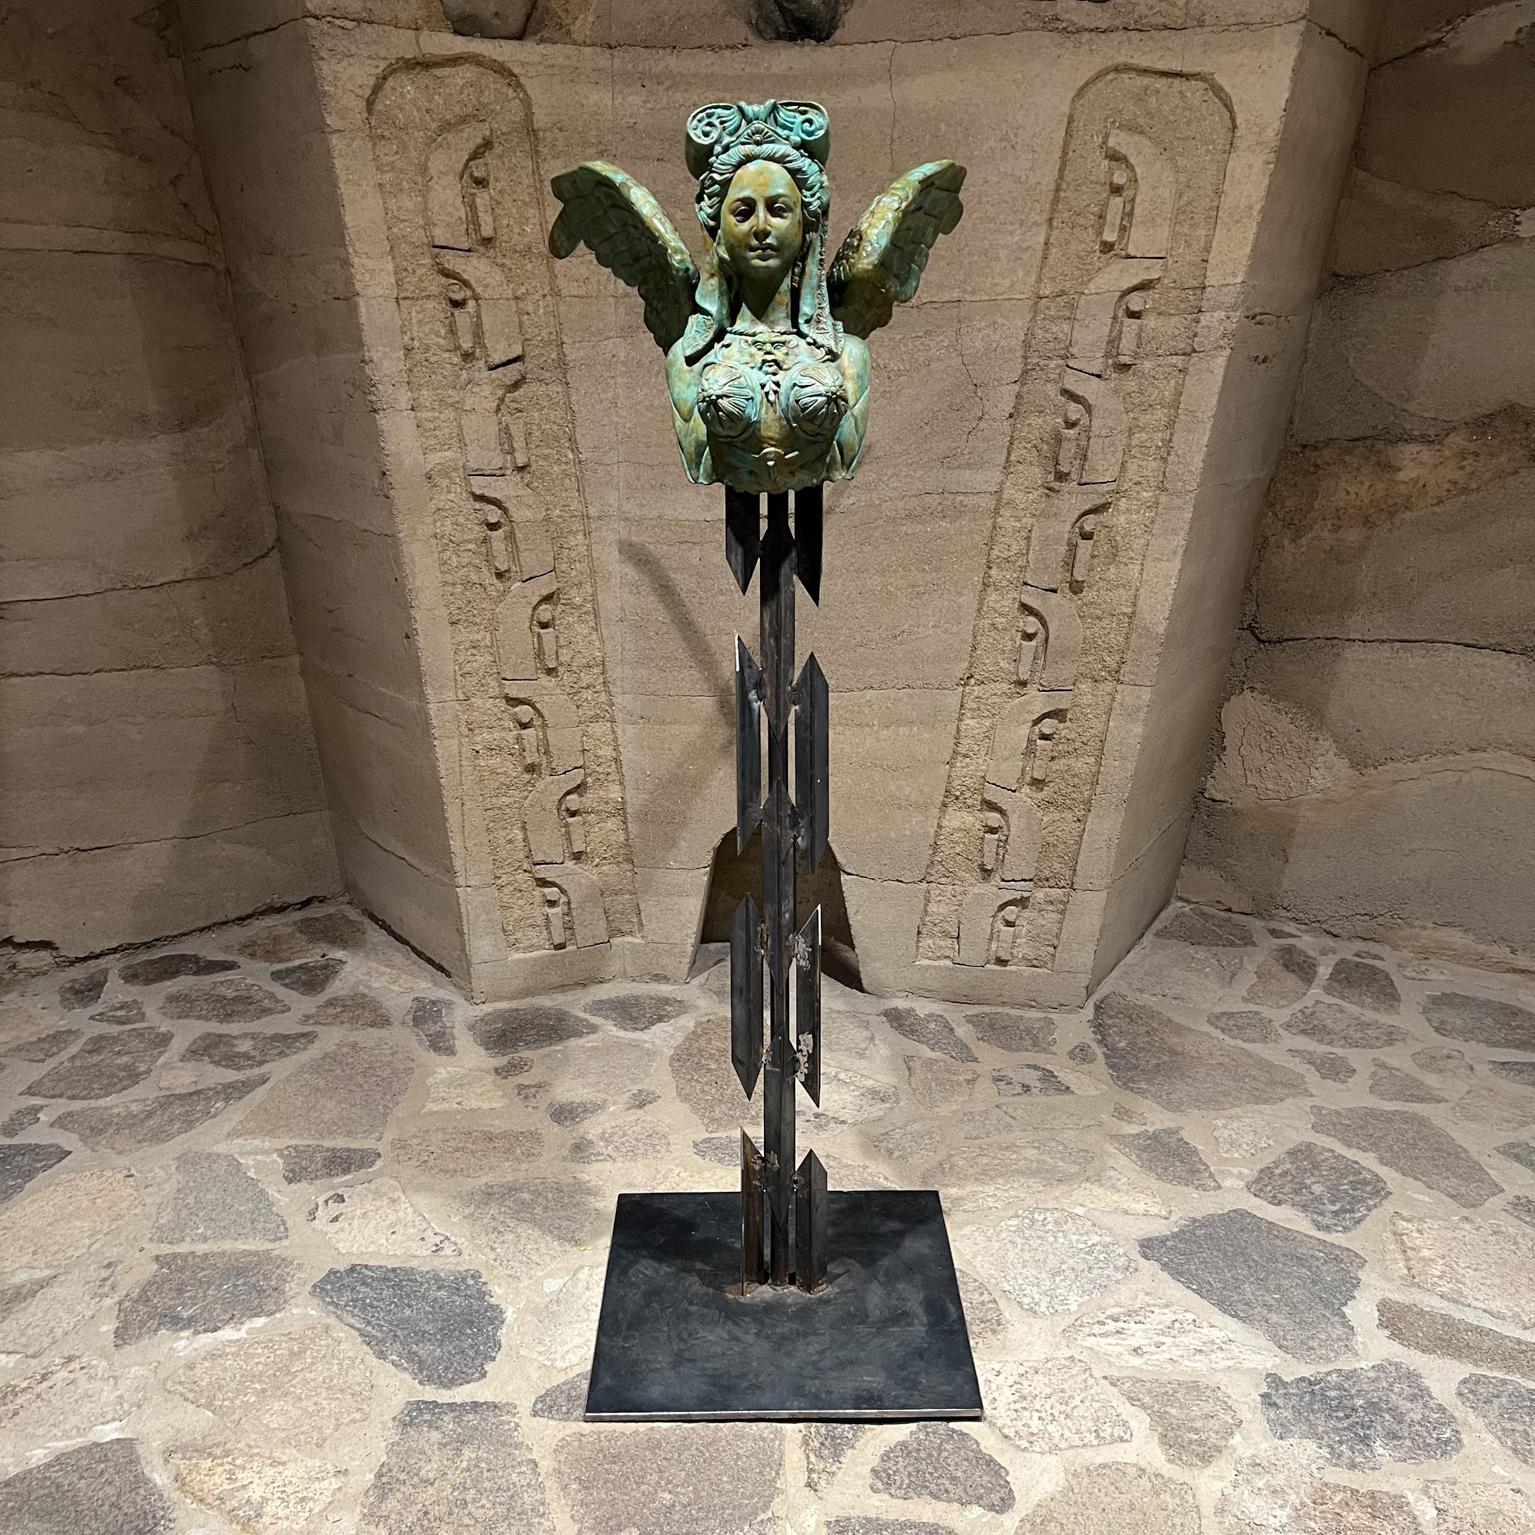 Mythologie grecque Sphinx imagerie Bronze Sculpture femme buste de lion avec ailes
61,5 haut x 24,5 l x 34 p
Monté sur une base en acier forgé.
Non signée.
État vintage d'origine. Patine verdigris.
Deux autres sont disponibles avec une patine